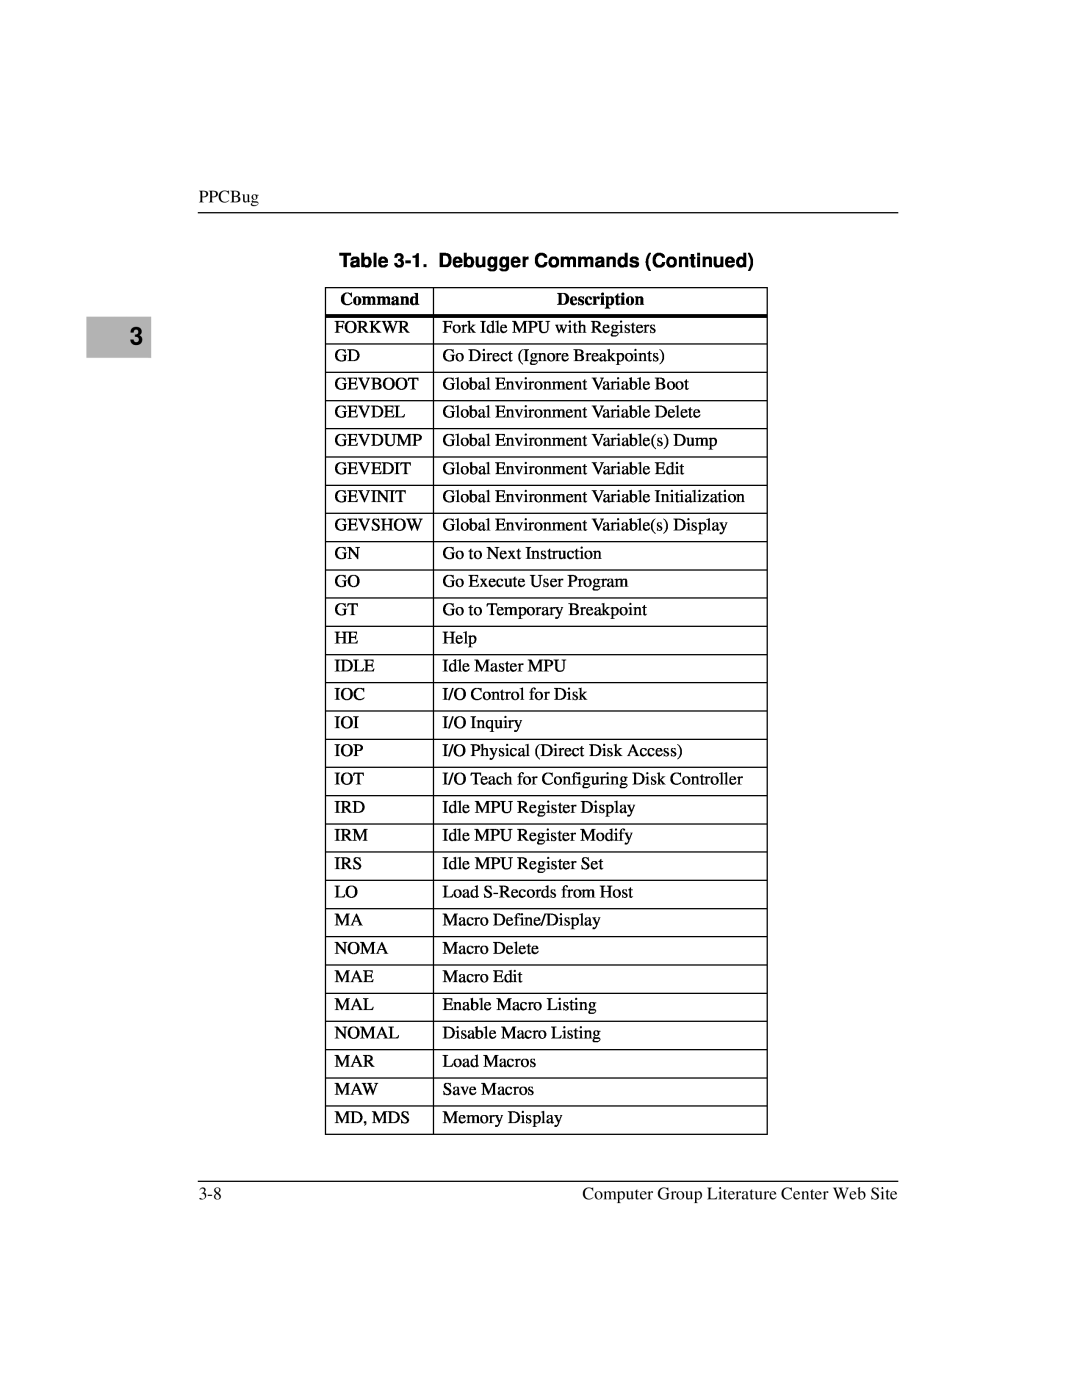 Motorola MCPN750A, IH5 manual 1. Debugger Commands Continued, Description 